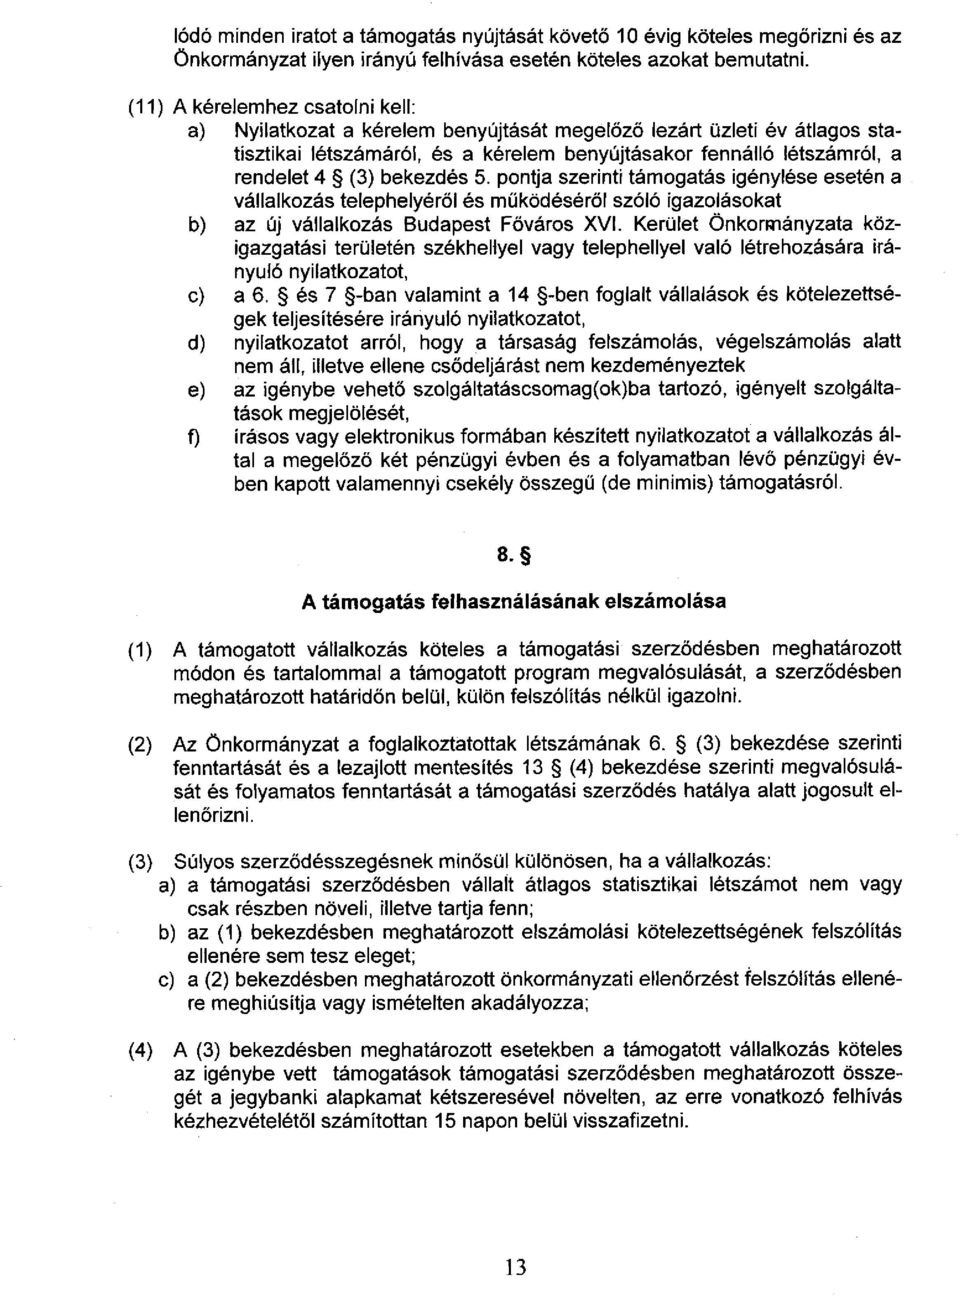 bekezdés 5. pontja szerinti támogatás igénylése esetén a vállalkozás telephelyéről és működéséről szóló igazolásokat b) az új vállalkozás Budapest Főváros XVI.